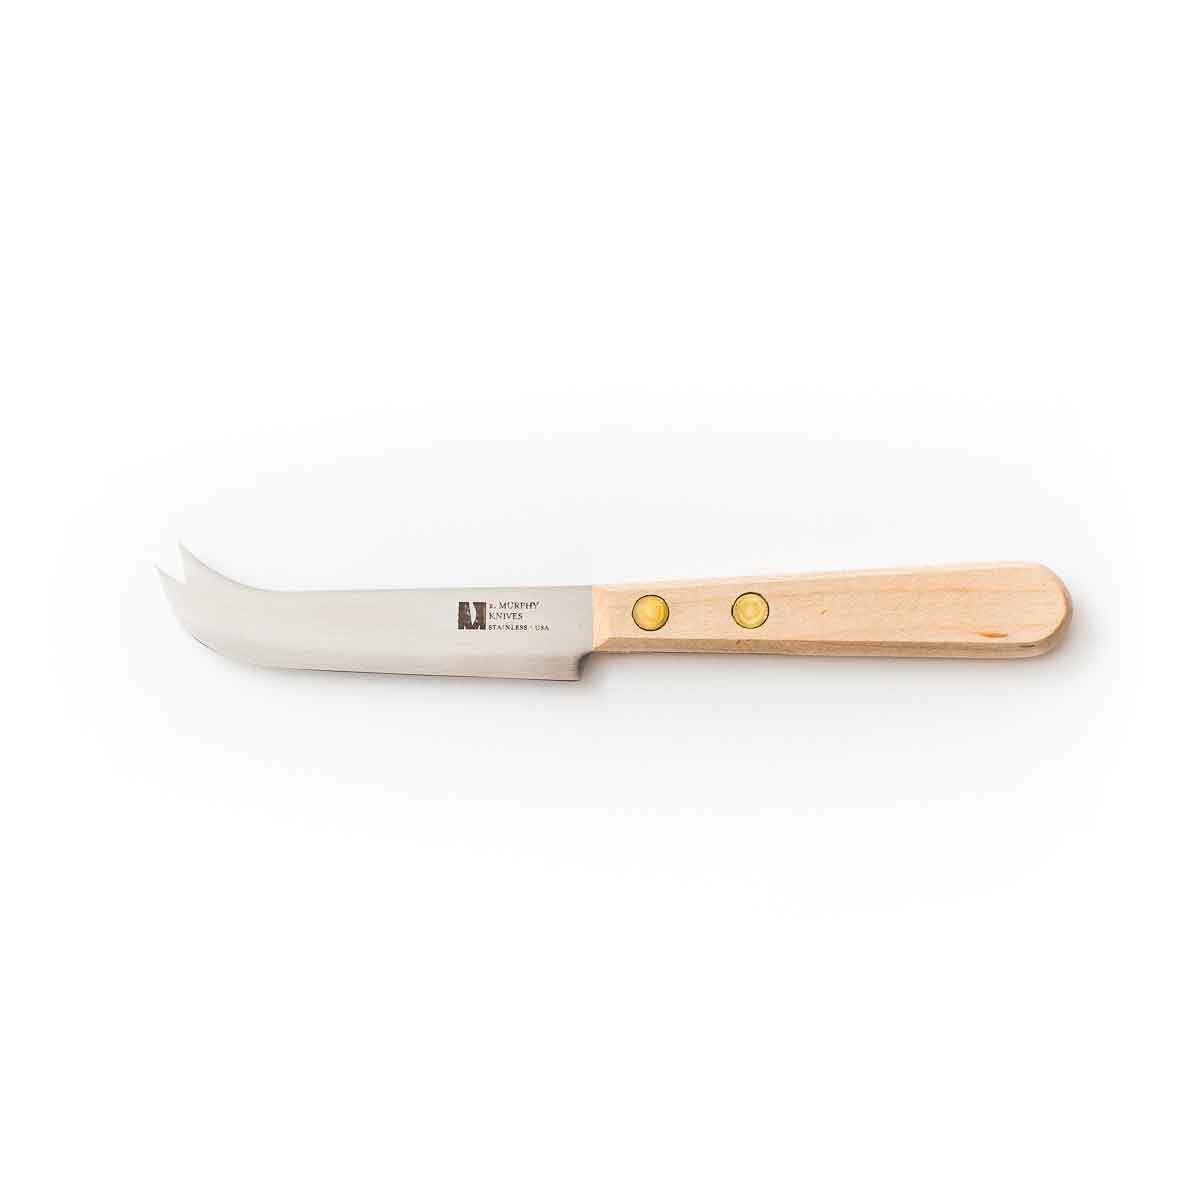 Cheese Knife - semi soft cheese knife